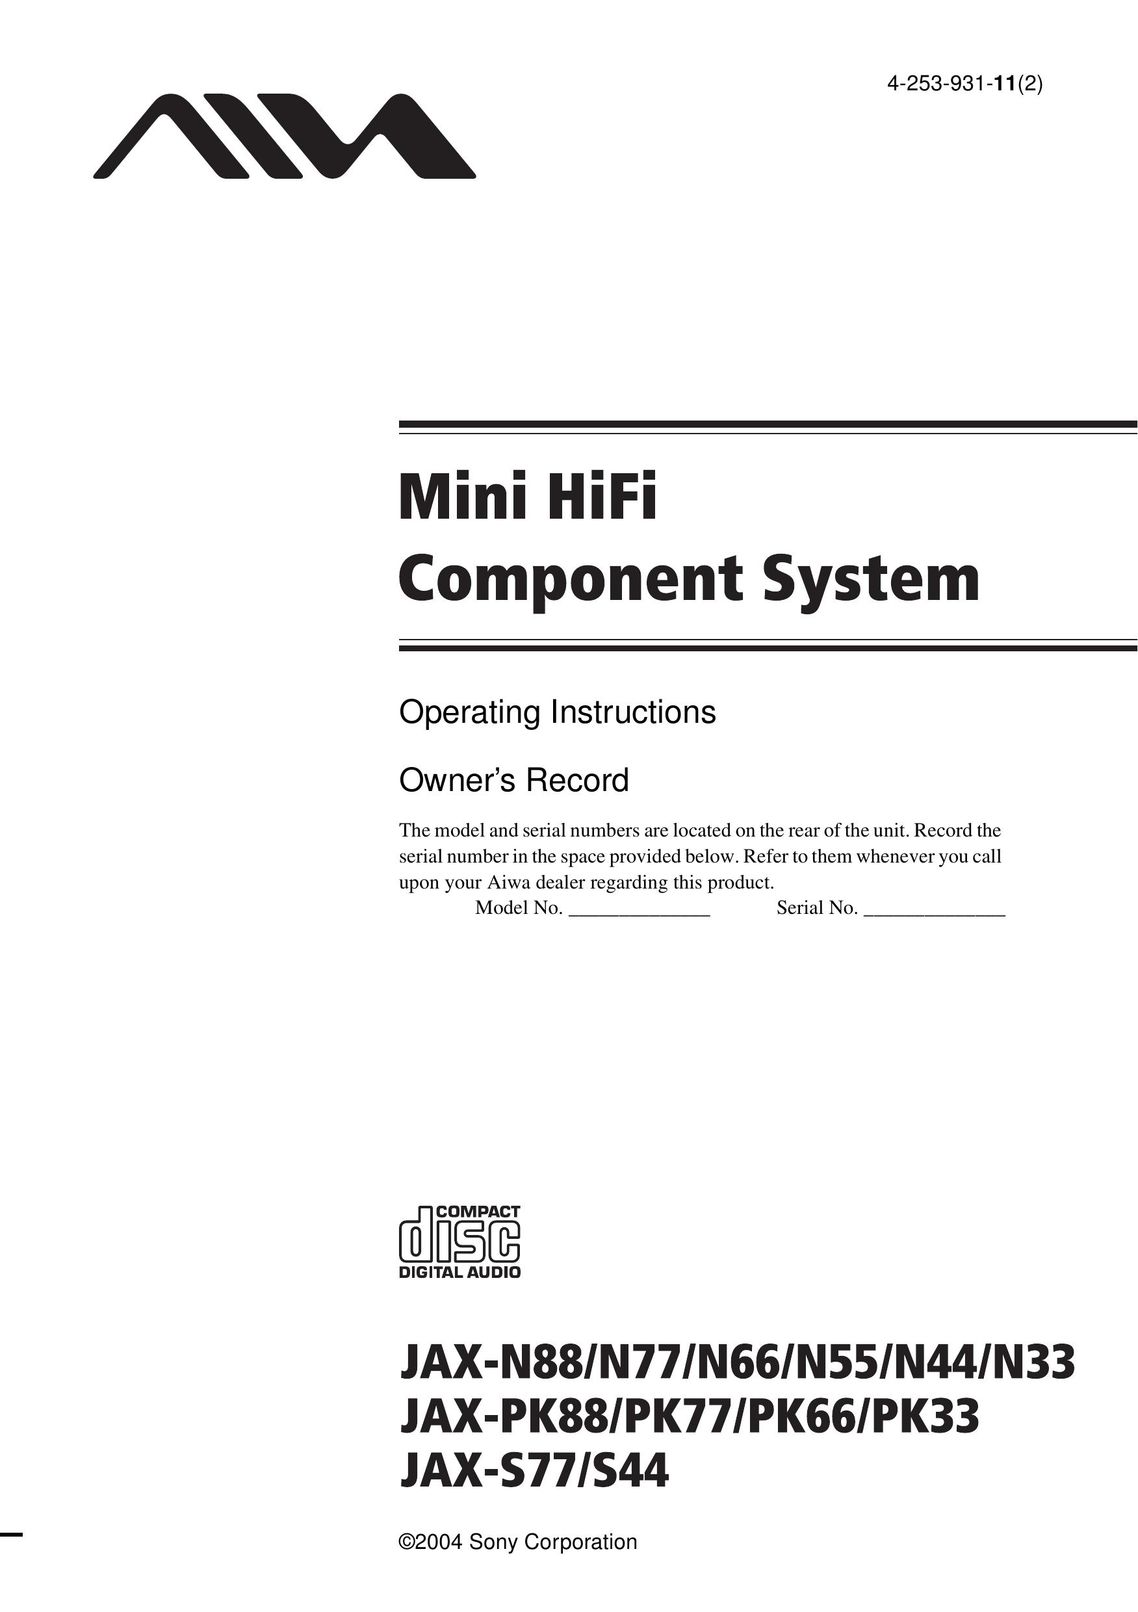 Aiwa JAX-N77 Stereo System User Manual